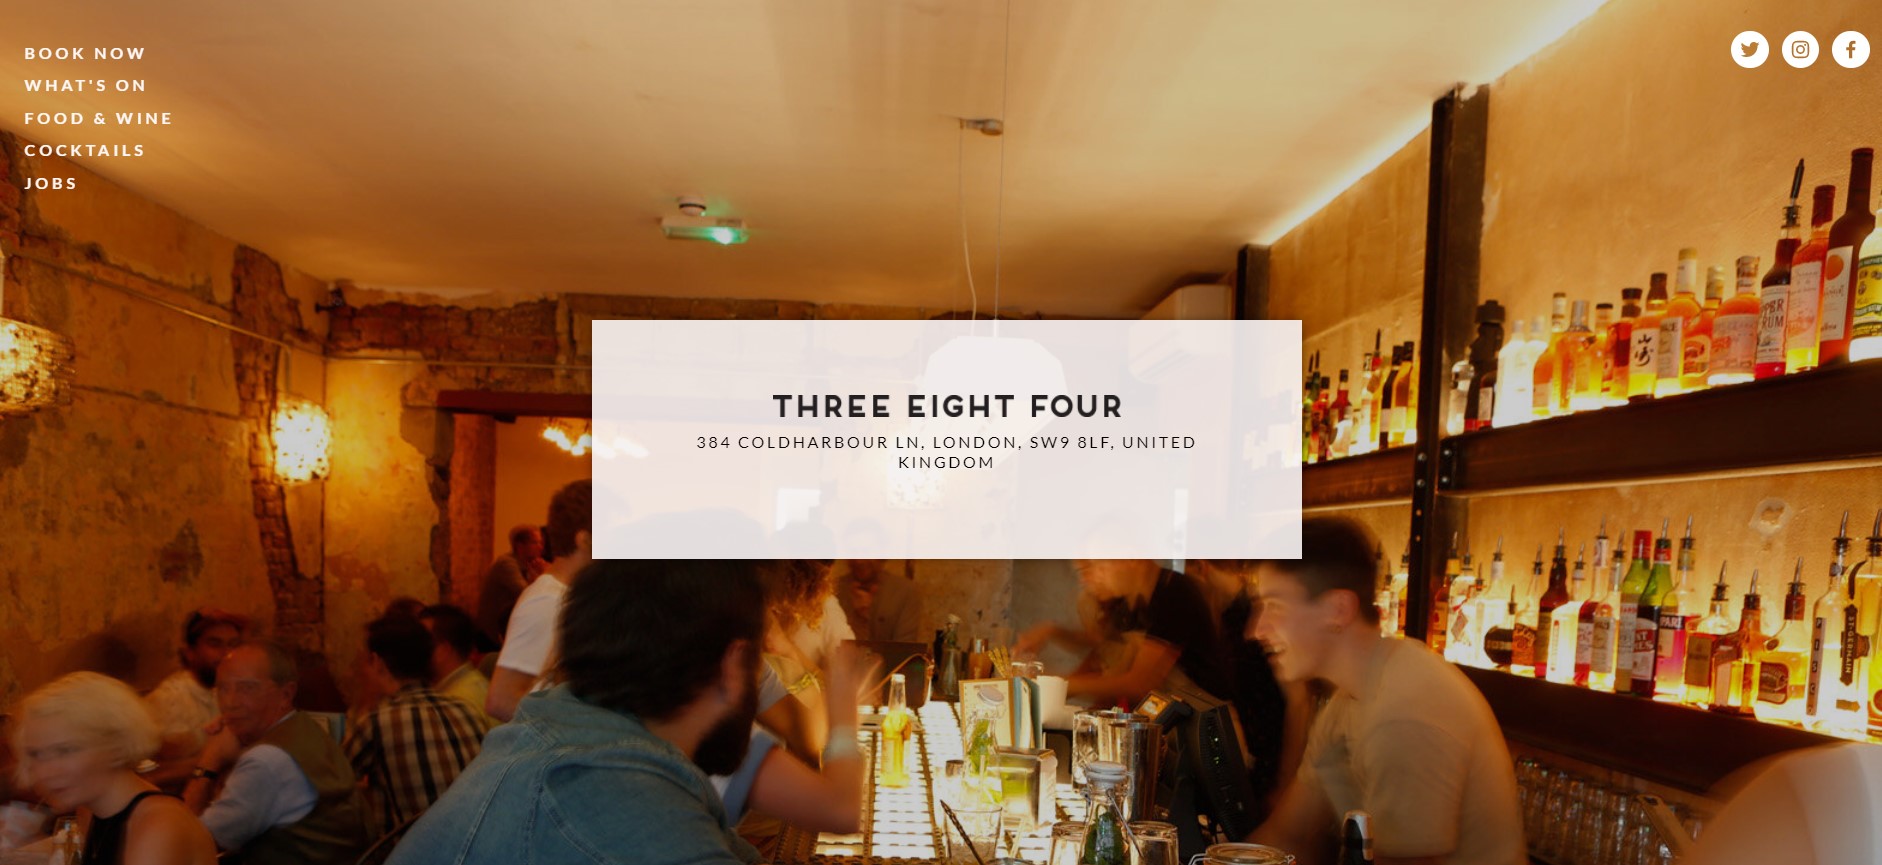 Three Eight Four